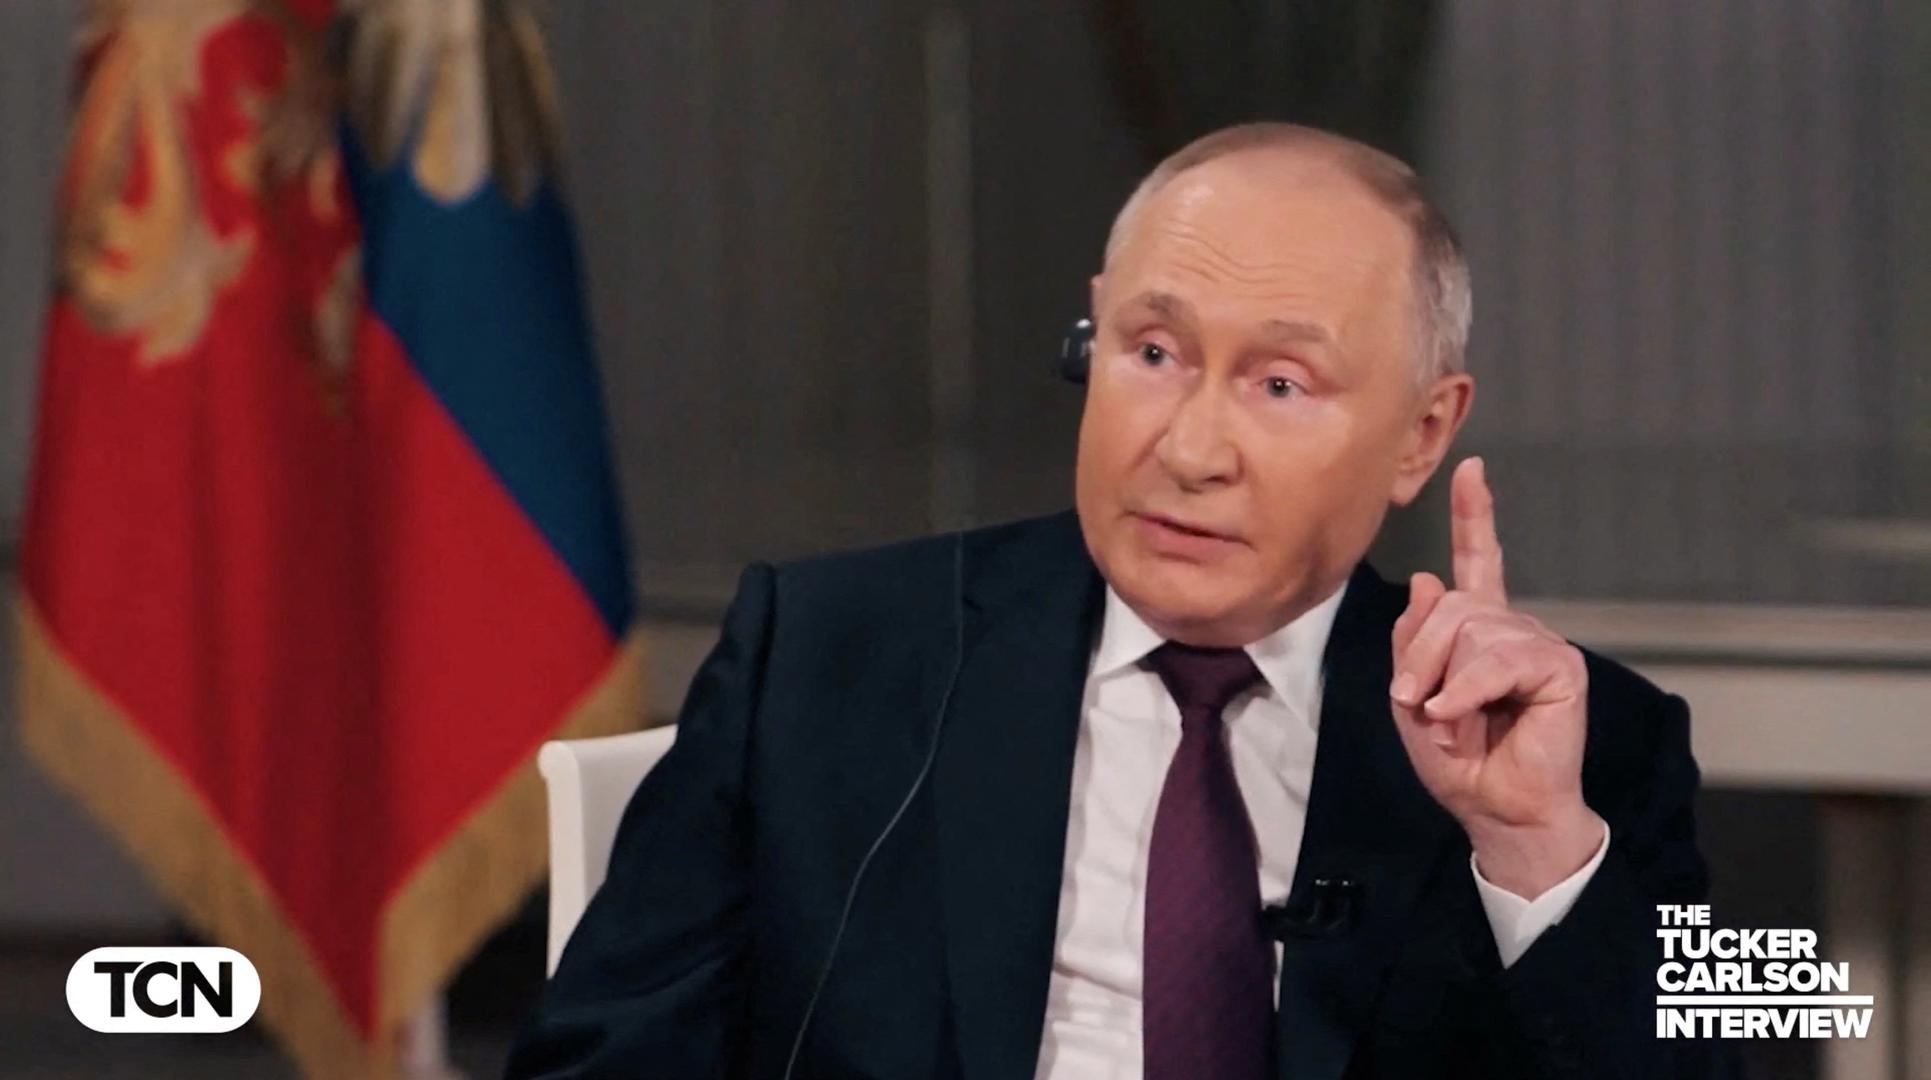 Nuklearno oružje spremna je upotrijebiti, kaže Putin, ako suverenitet Rusije bude ugrožen.